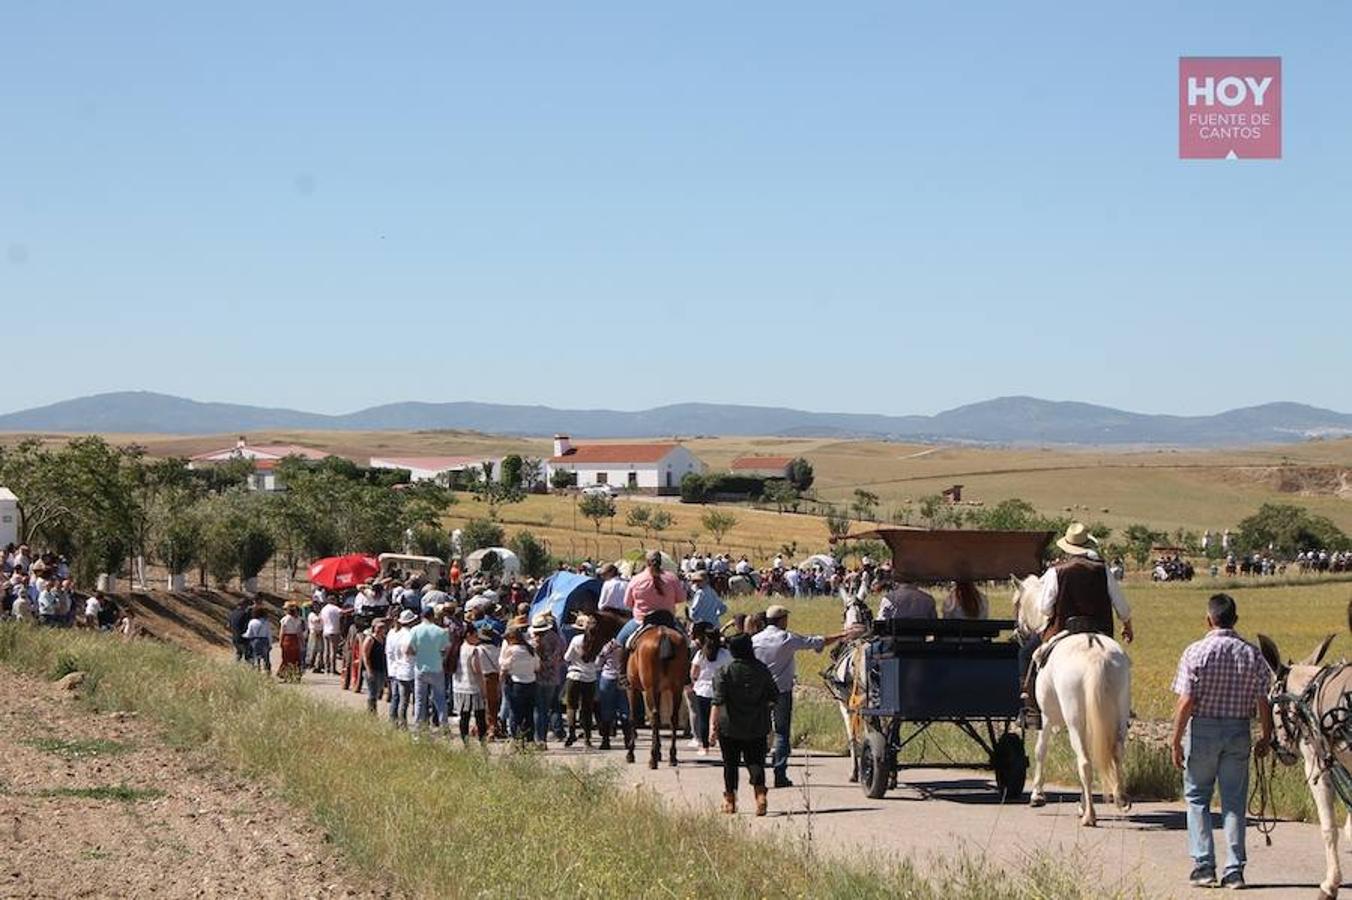 Cientos de romeros partieron ayer en este caminar, en una jornada en las que les acompañó el buen tiempo